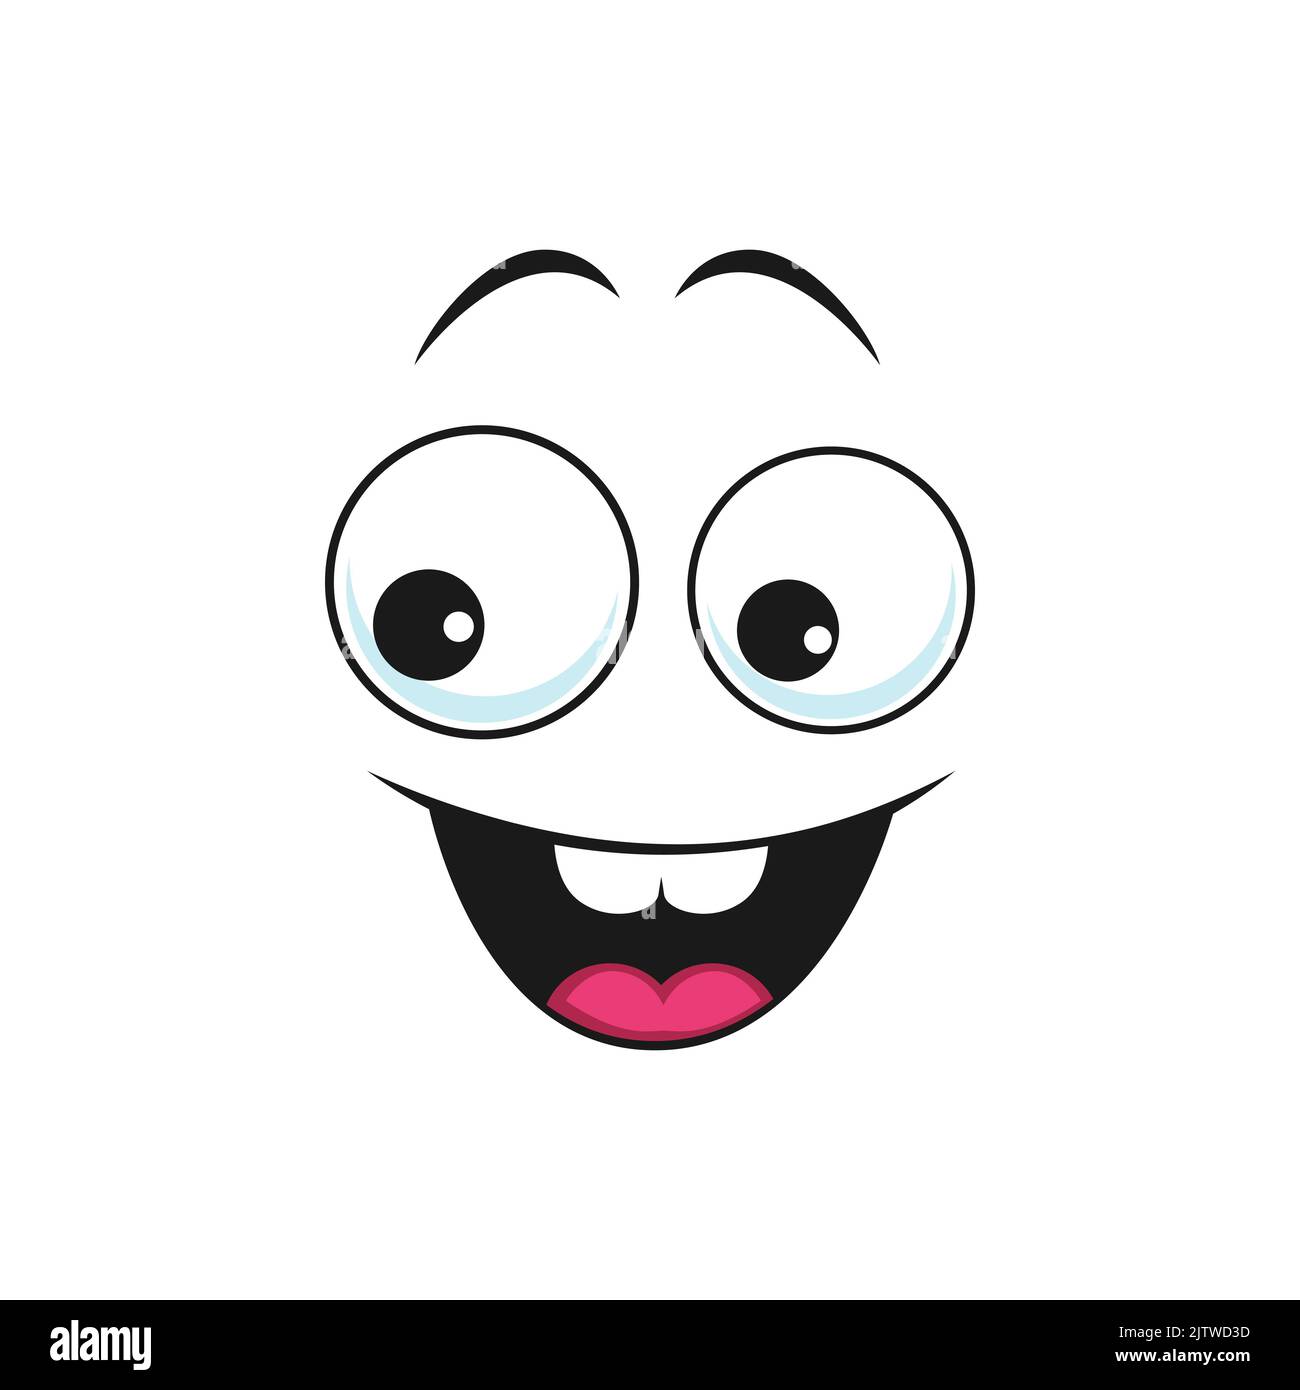 Faccia felice eccitata, emoji vettoriale del cartone animato con il sorriso largo, espressione facciale di felicità. Volto comico con bocca sorridente e toothy e occhi rotondi. Divertente emot Illustrazione Vettoriale